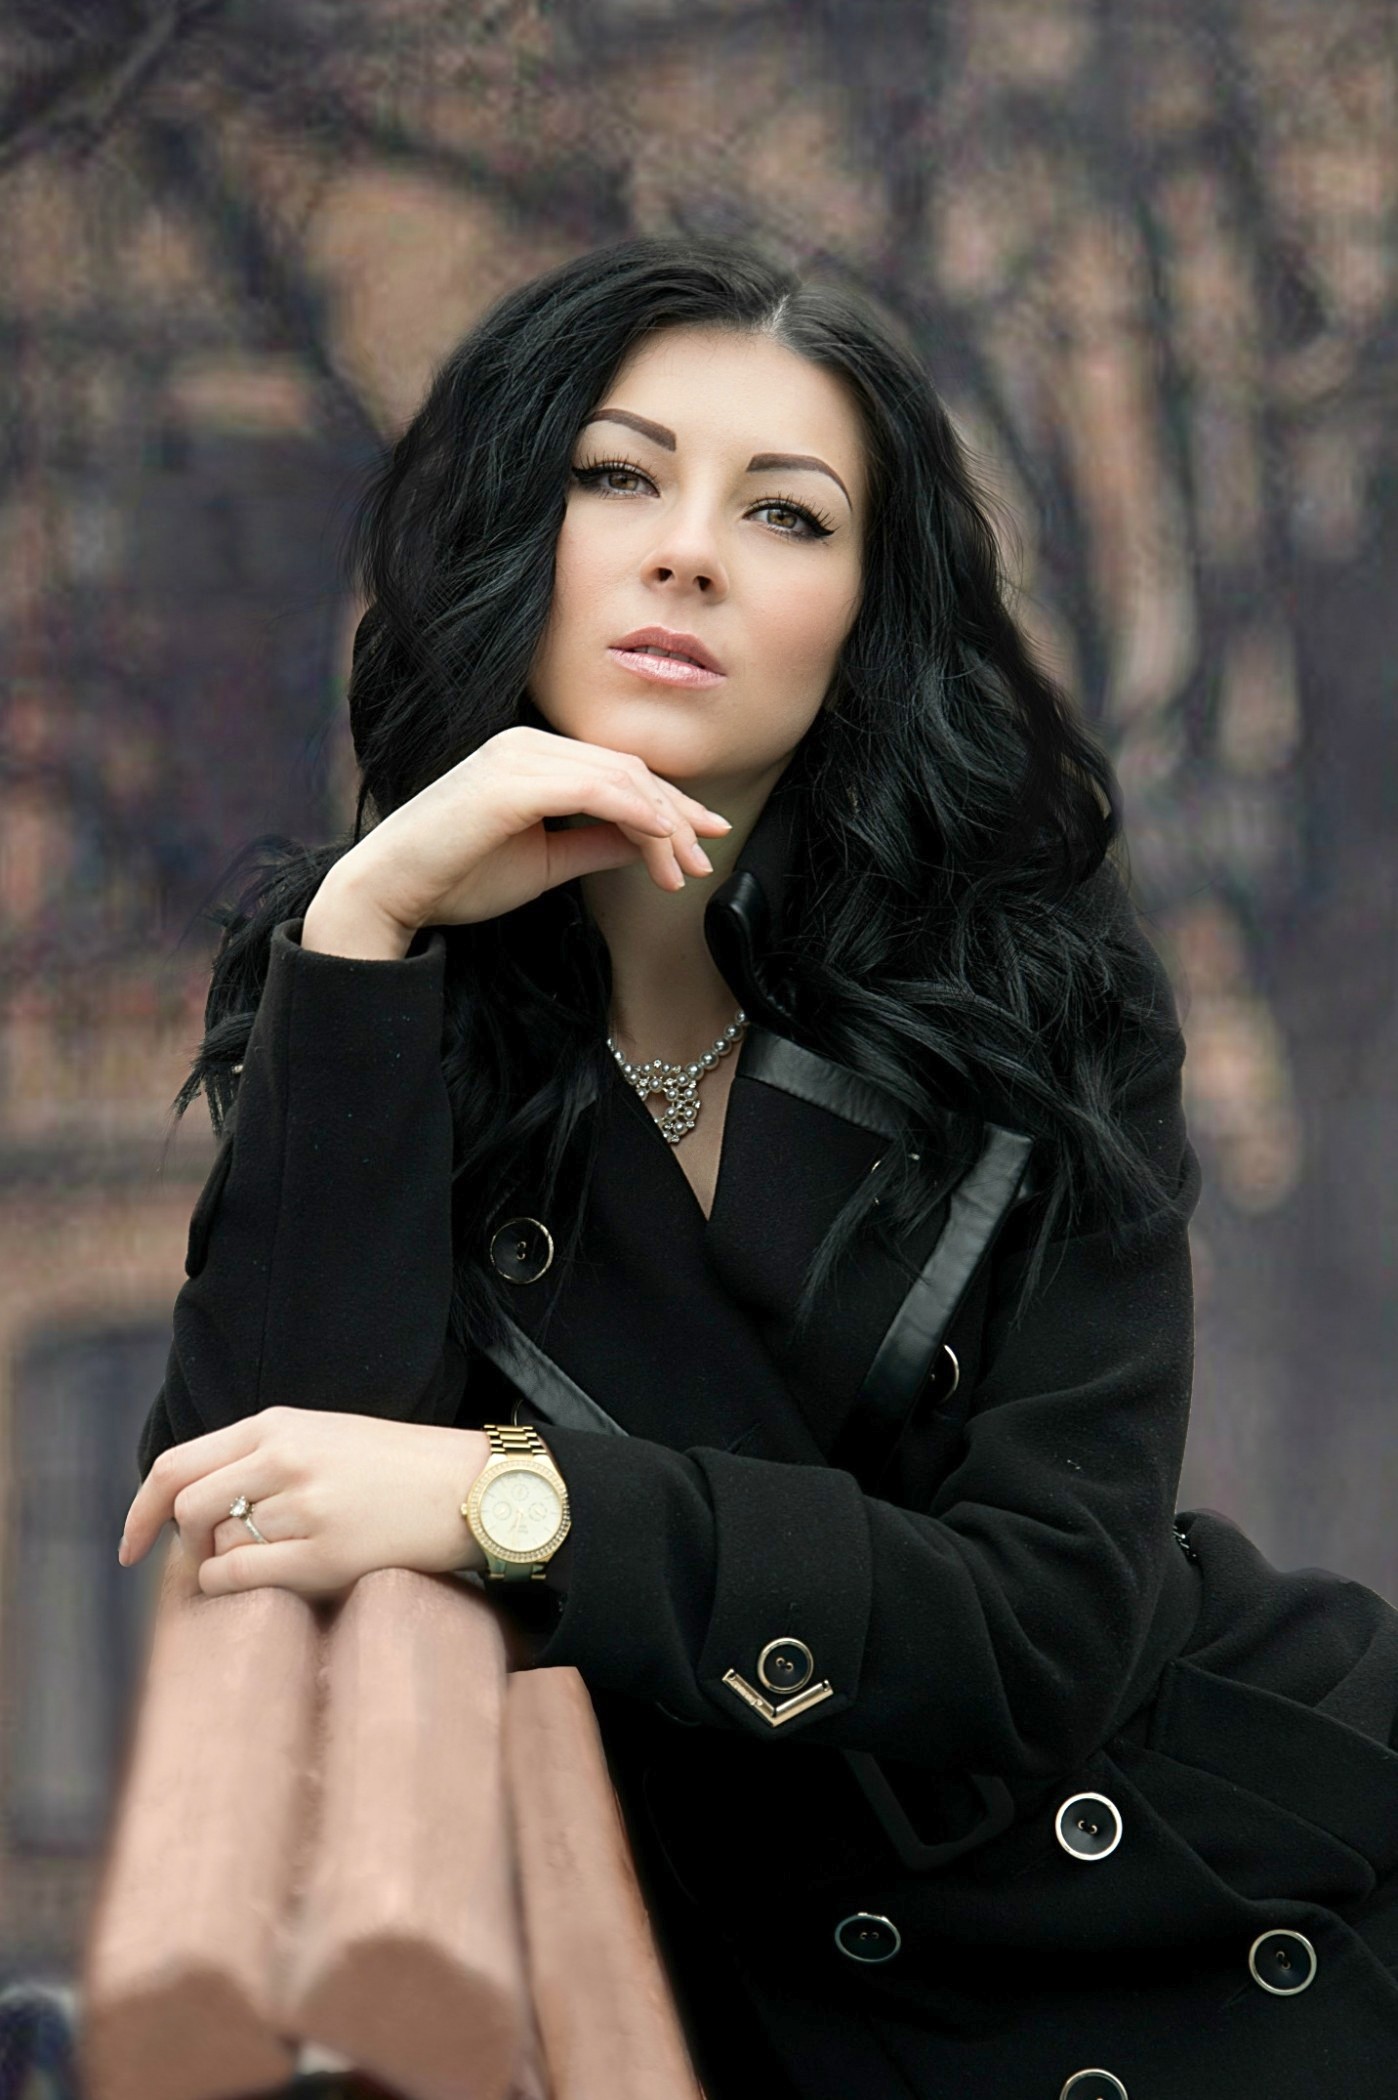 Ukrainian Single: Svetlana green eyes, 29 years old | ID206985